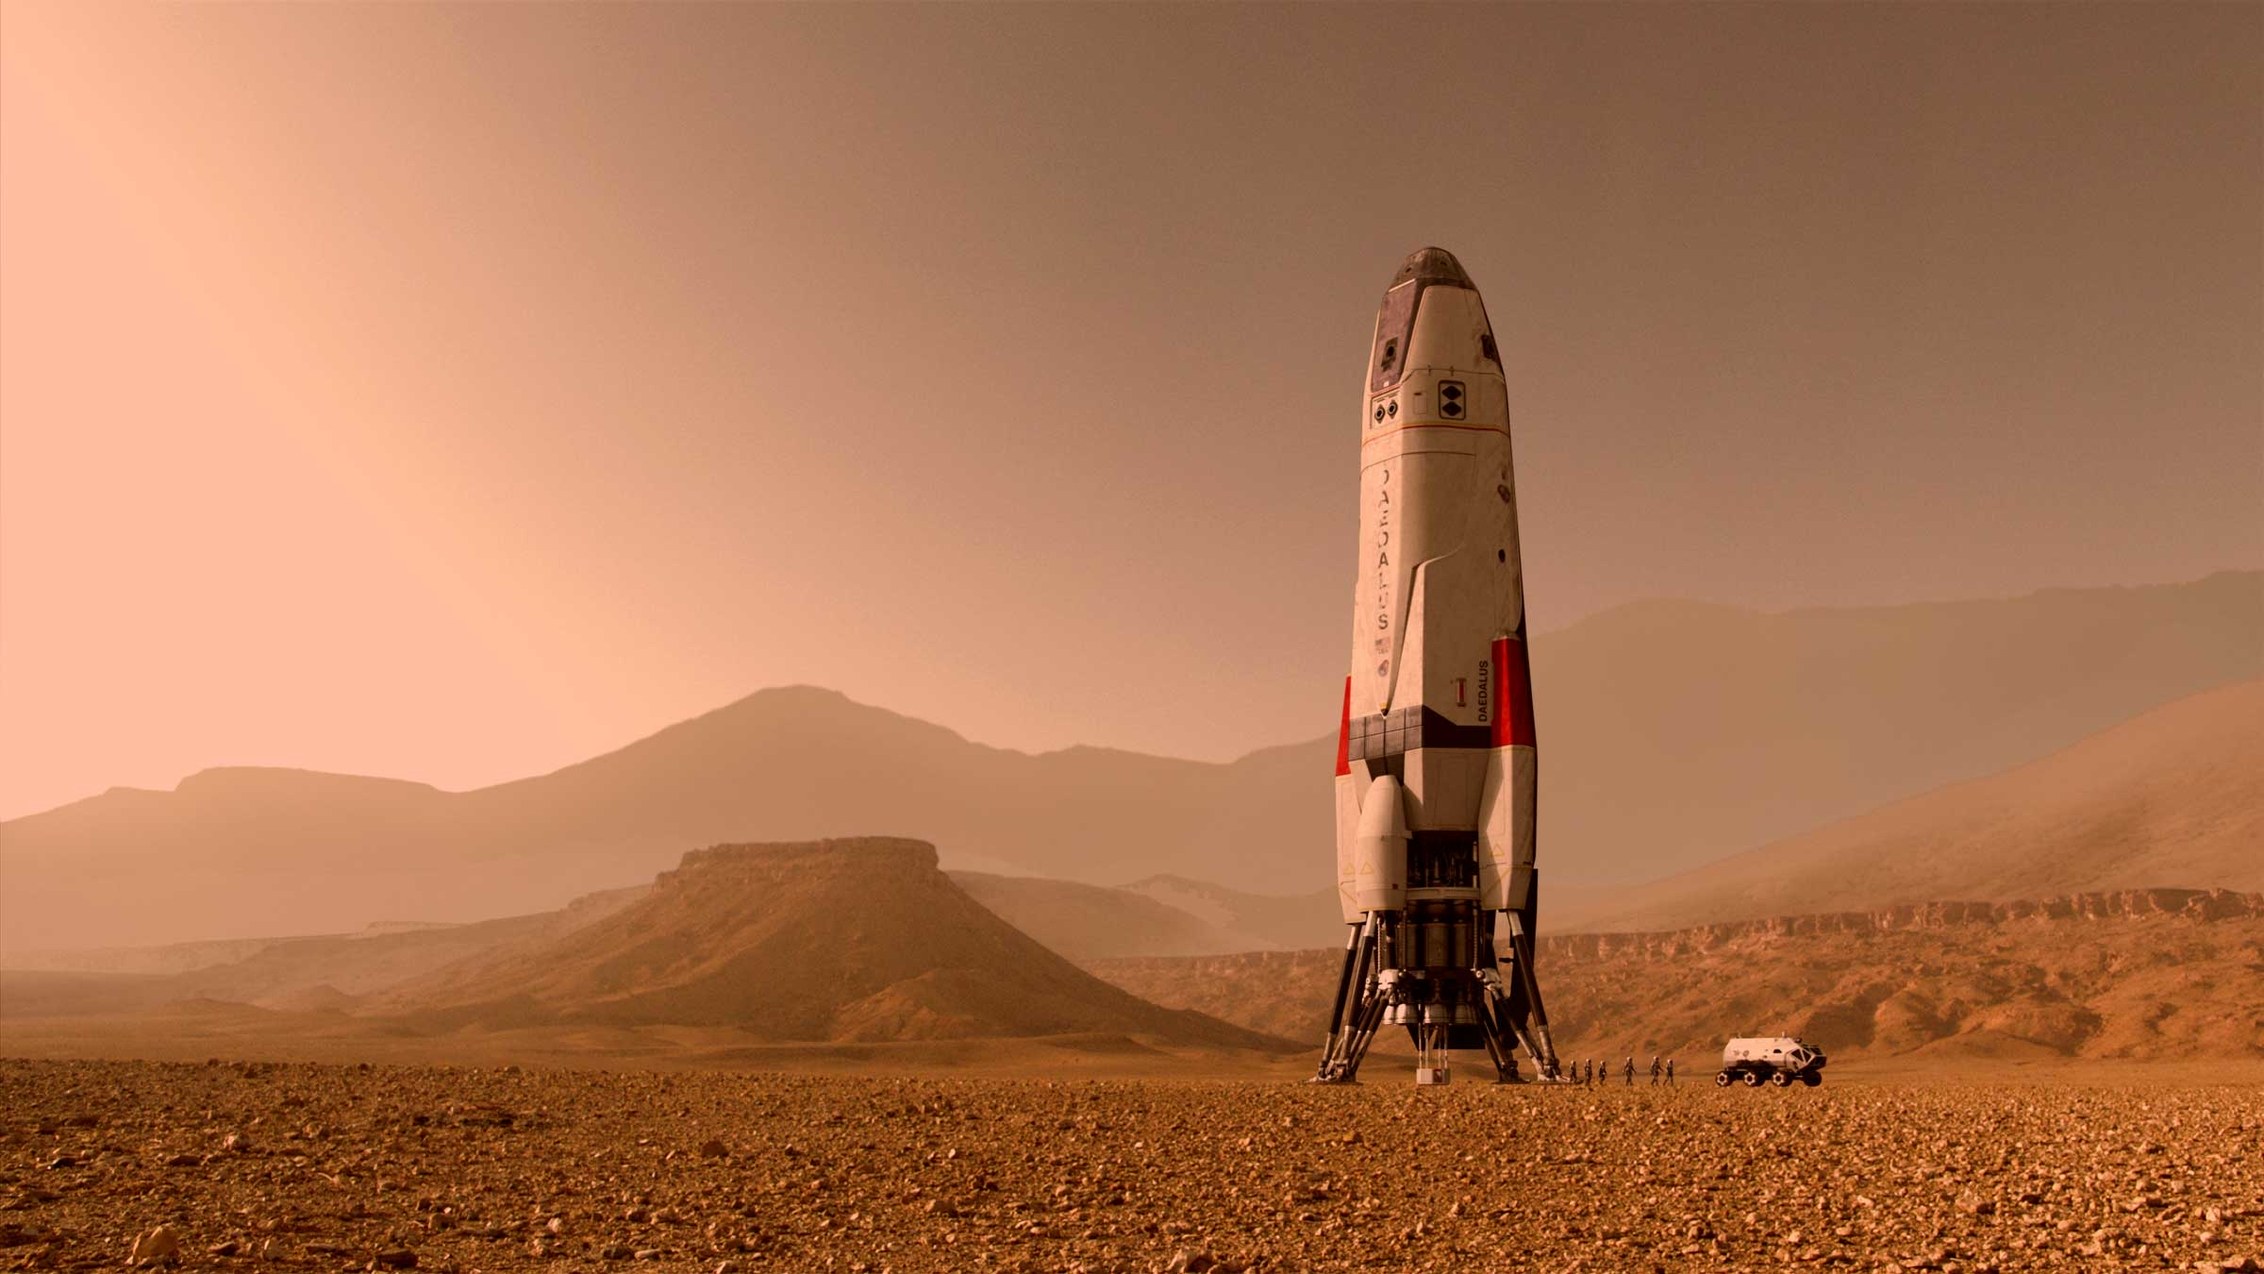 Mars Wallpaper Hd - Rocket On Mars - HD Wallpaper 